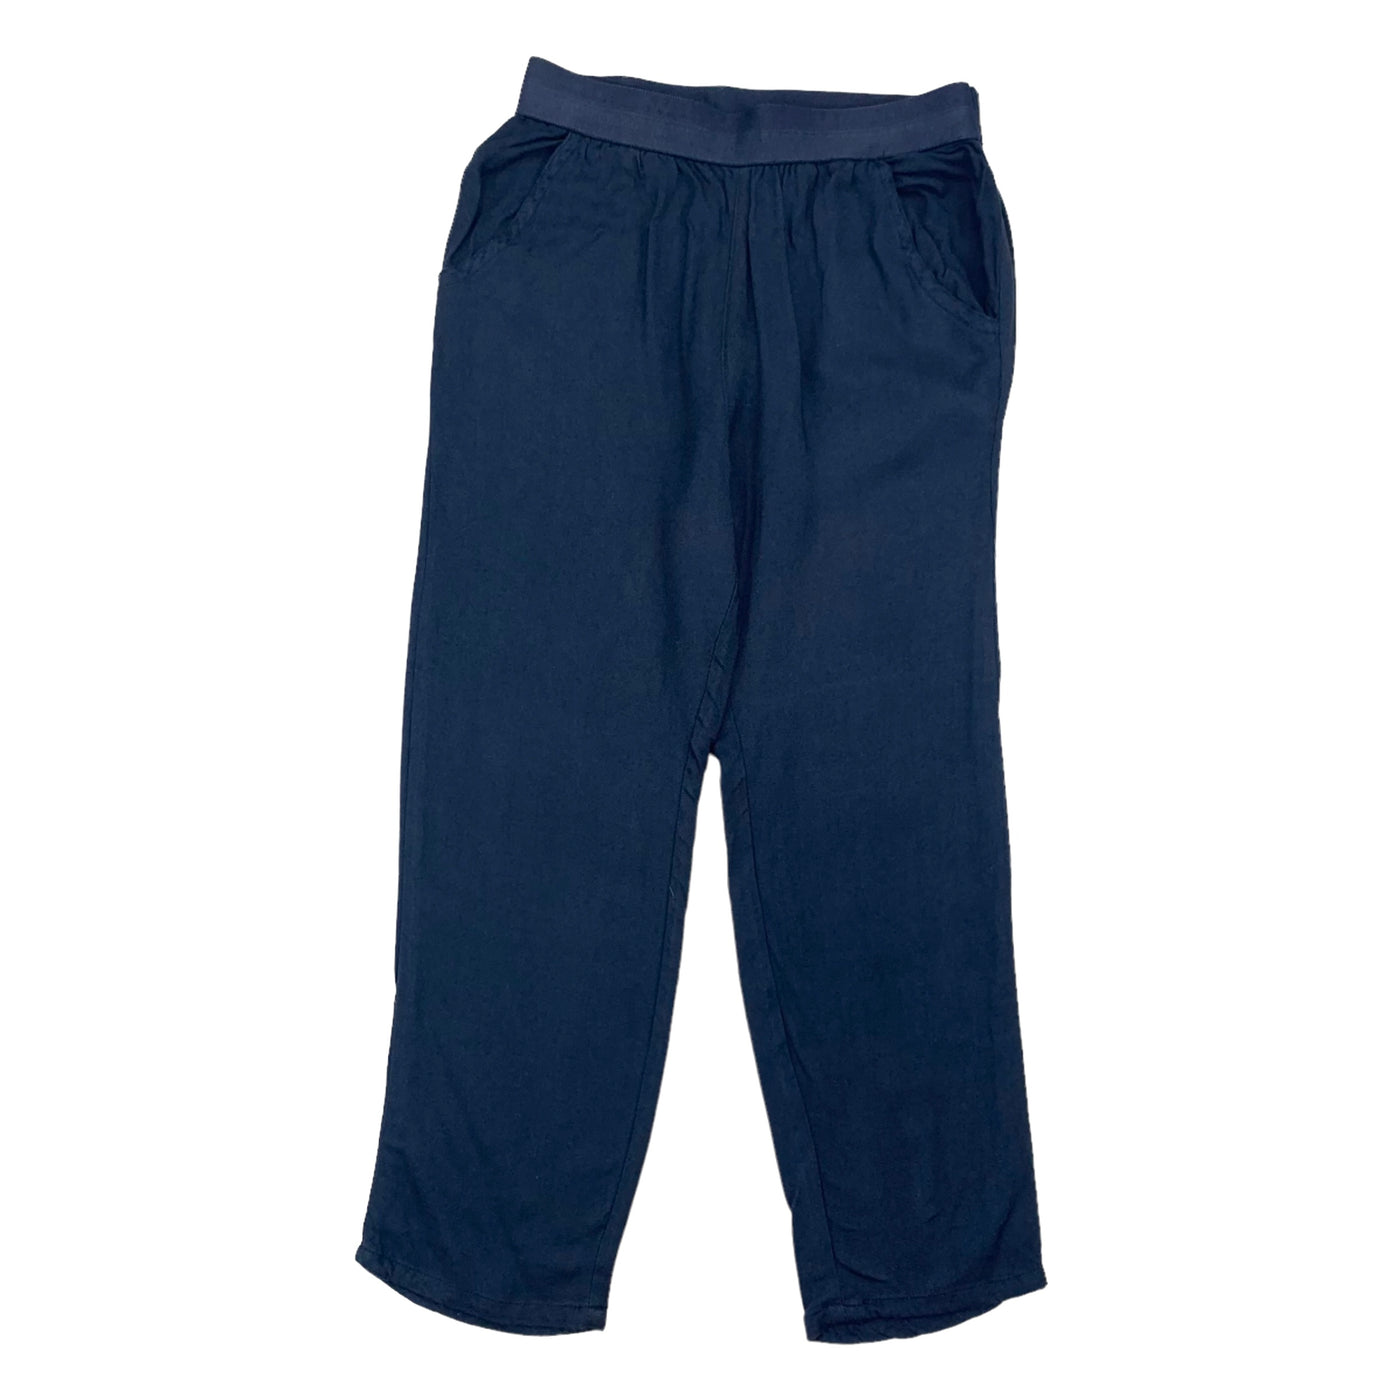 Kids Case flowy pants navy blue size 6